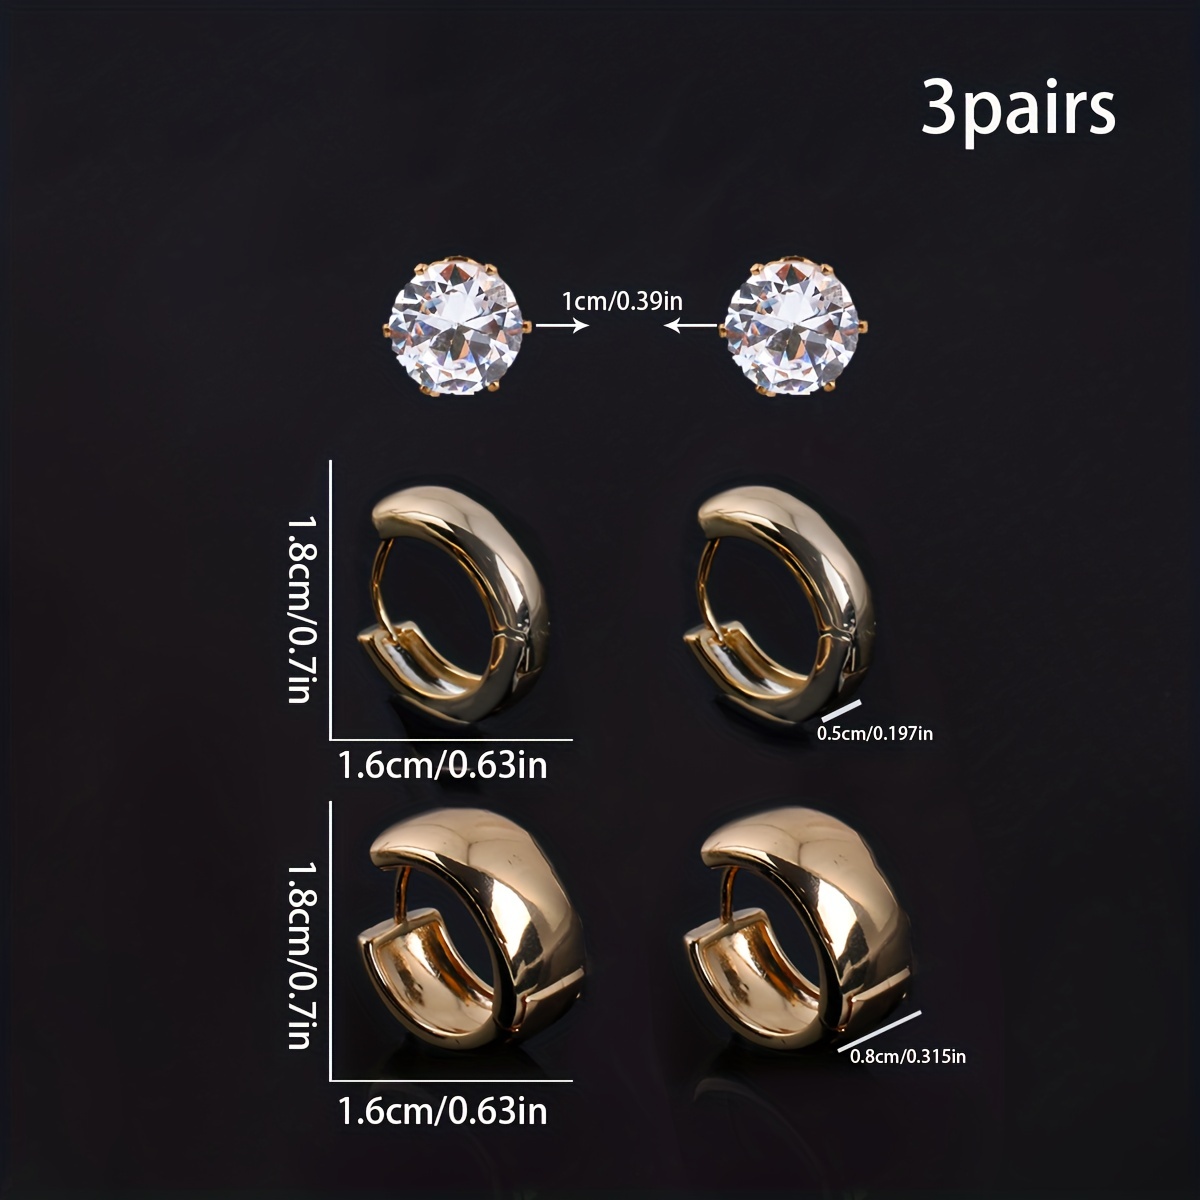 Crystal Butterfly Earrings, Fairy Wing Earrings CZ Stone Earrings, Long  Earrings Minimalist Stud Earrings, Girly Earrings Gold Hoop Earrings |  Minimalist earrings studs, Wing earrings, Minimalist earrings